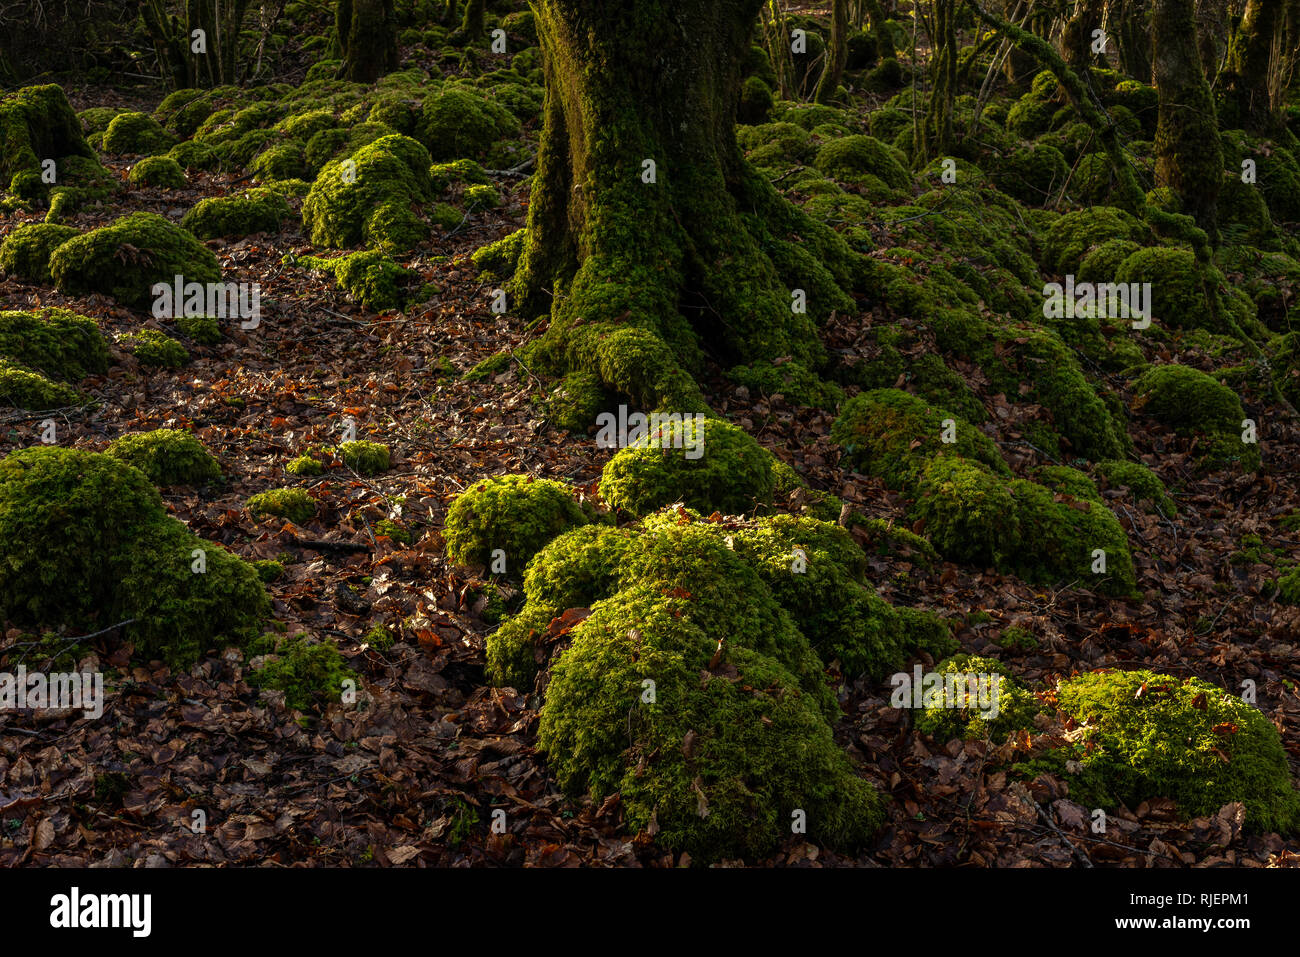 Forêt de bois mossy Irlande. Arbres et pierres recouverts de mousse à l'île Ross dans le parc national de Killarney, comté de Kerry, Irlande Banque D'Images